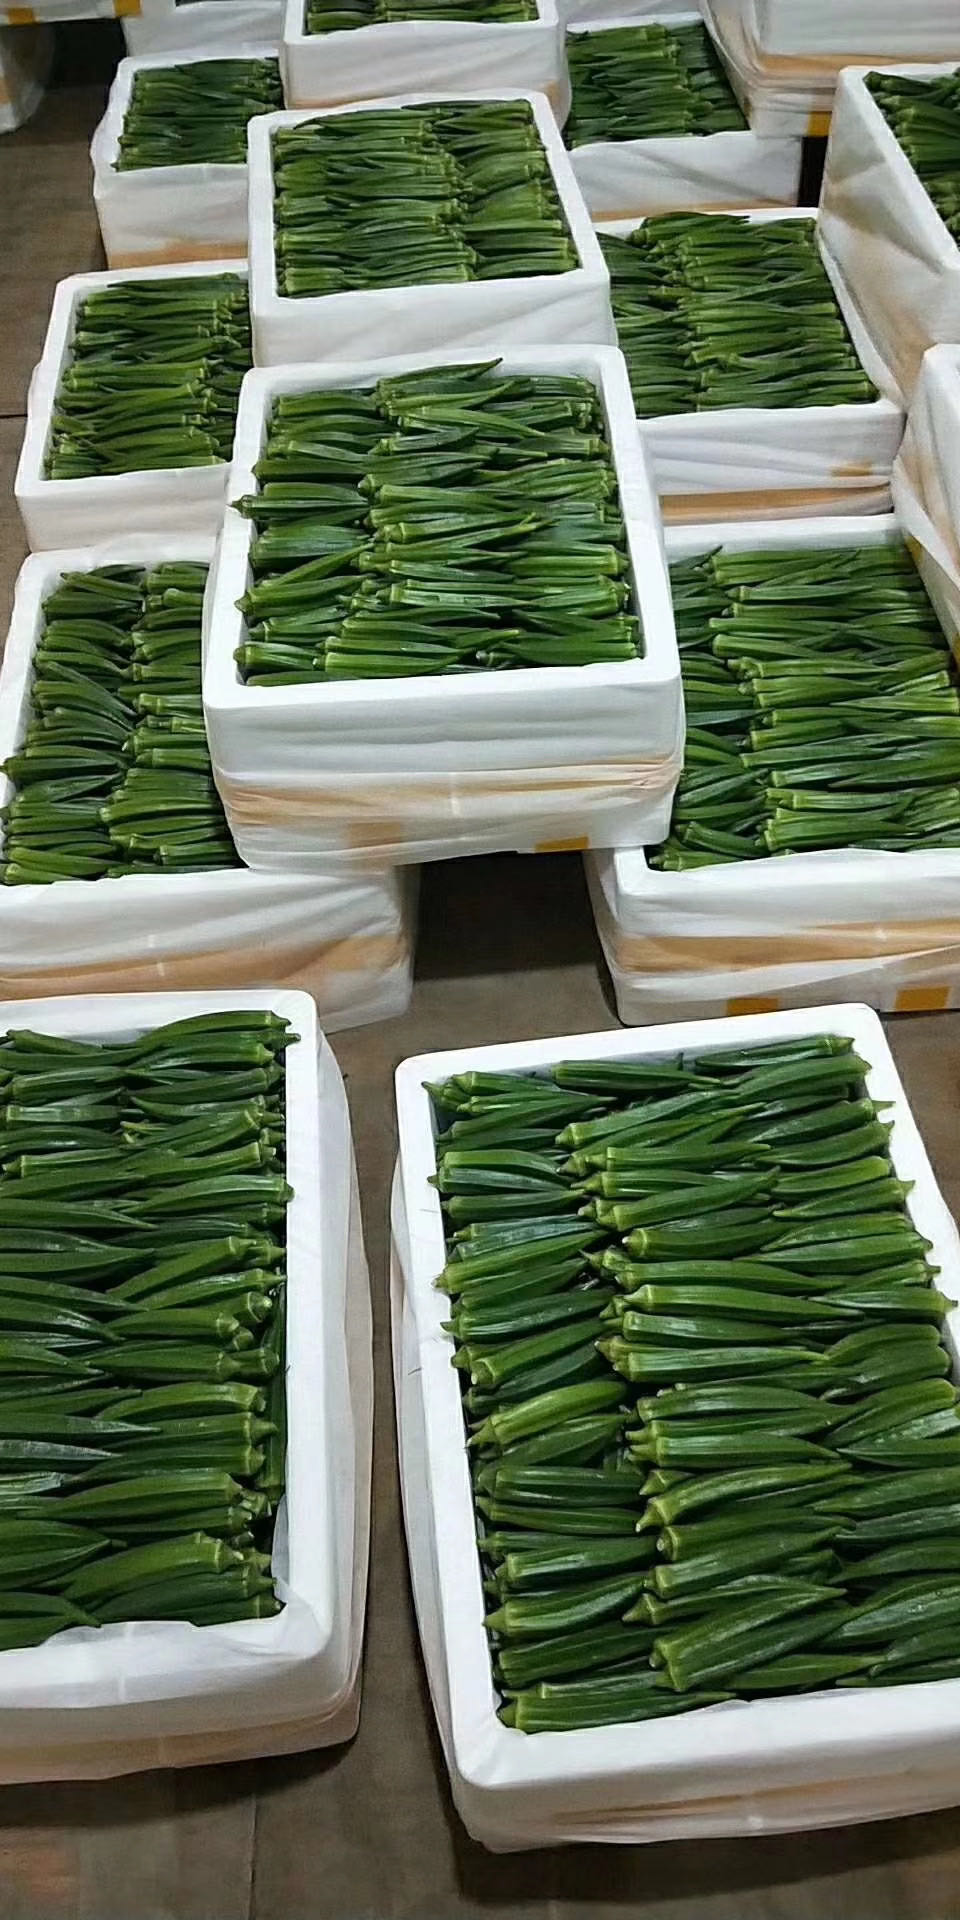 漳州黃秋葵水果型  種植大戶 自家凍庫收購 支持全國物流發貨